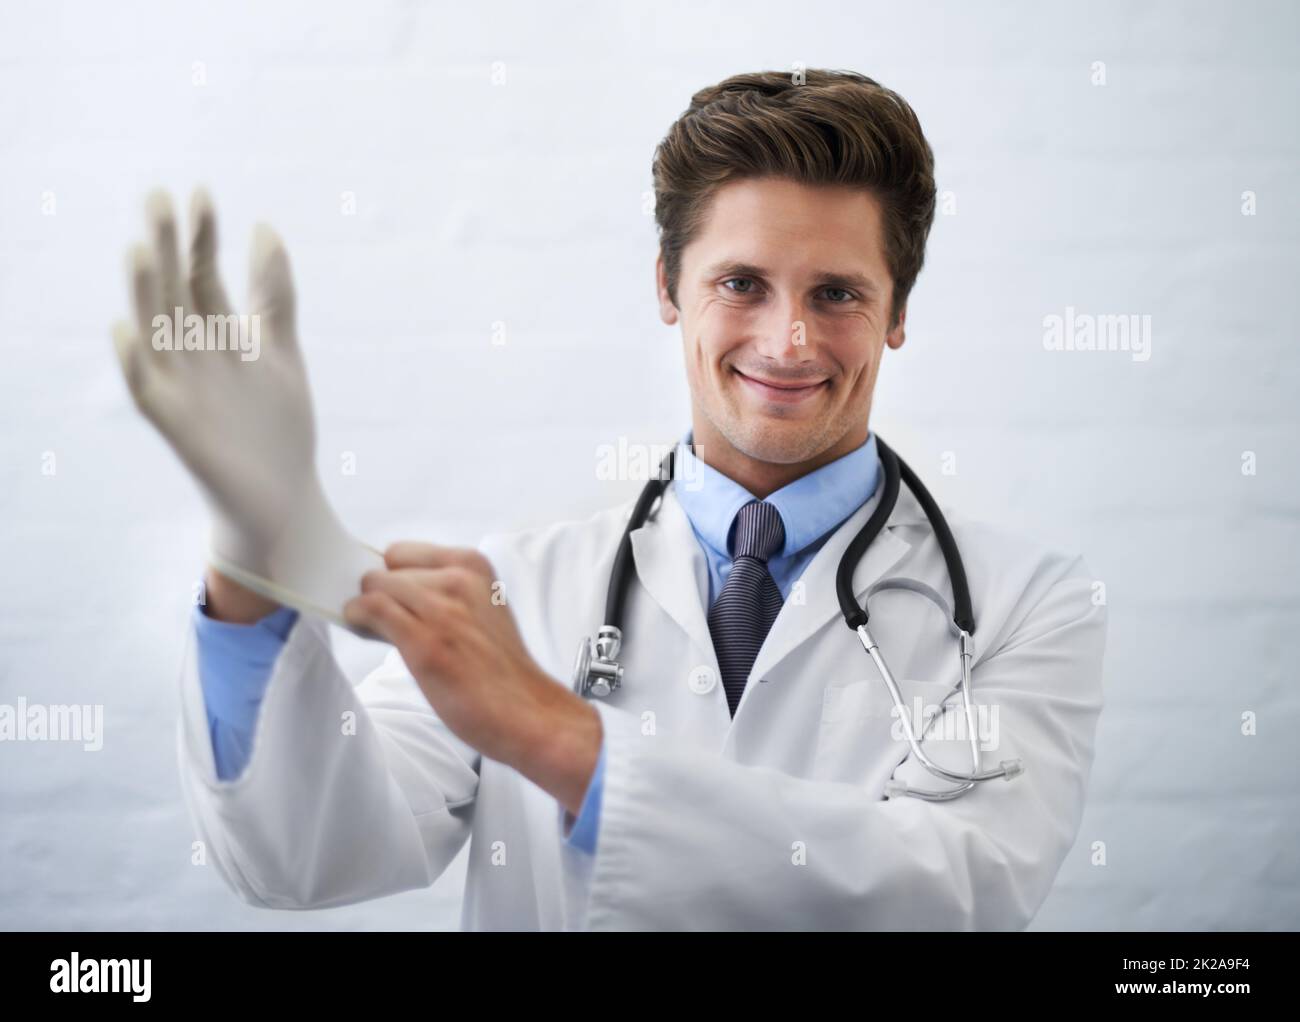 Das wird nicht lange dauern Aufnahme eines lächelnden Arztes, der an einem chirurgischen Handschuh zieht. Stockfoto